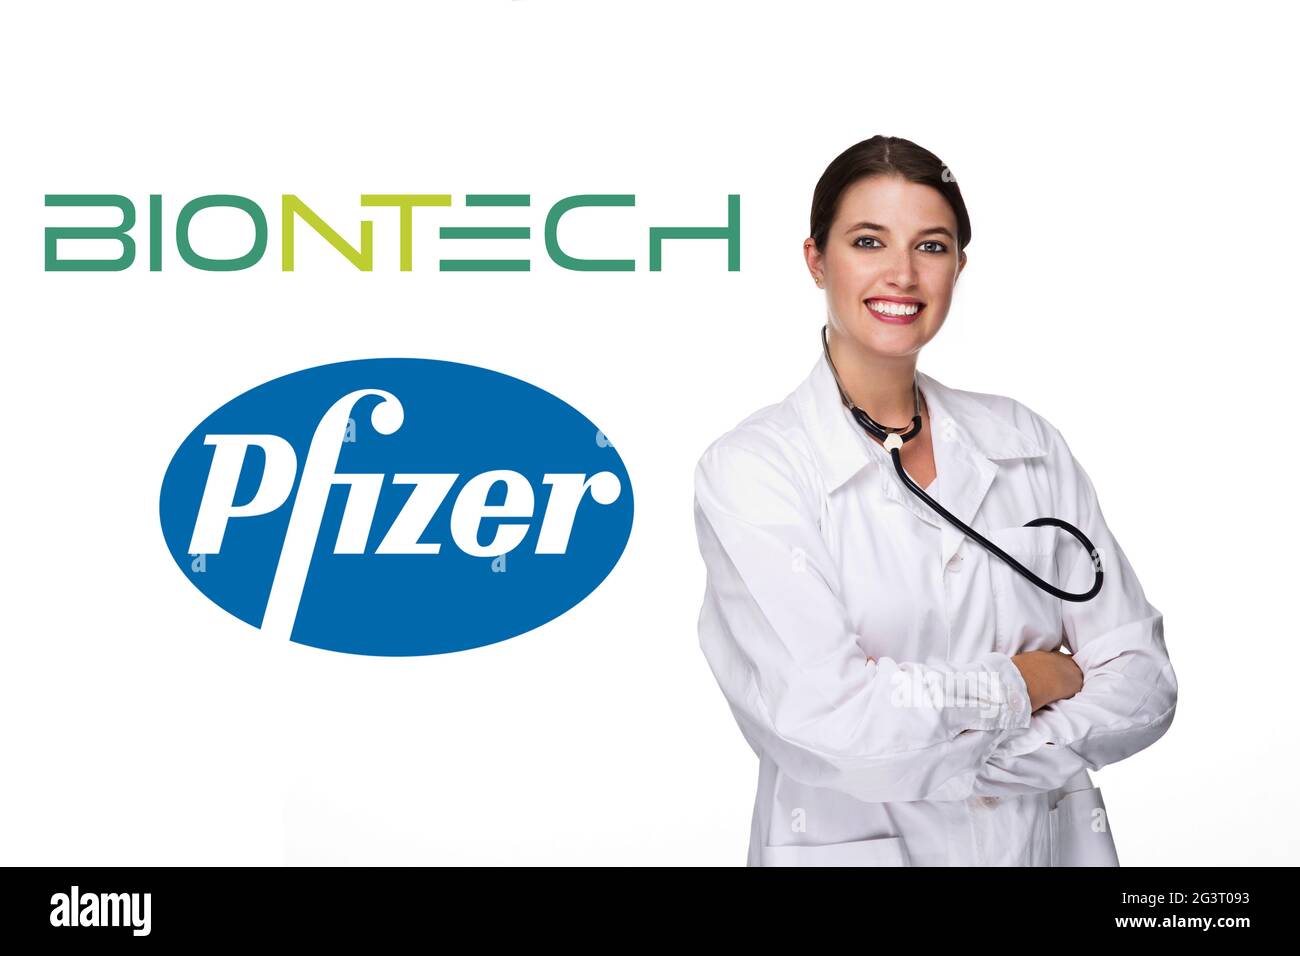 Jeune médecin avec stéthoscope devant le logo de Biontech Pfizer Banque D'Images